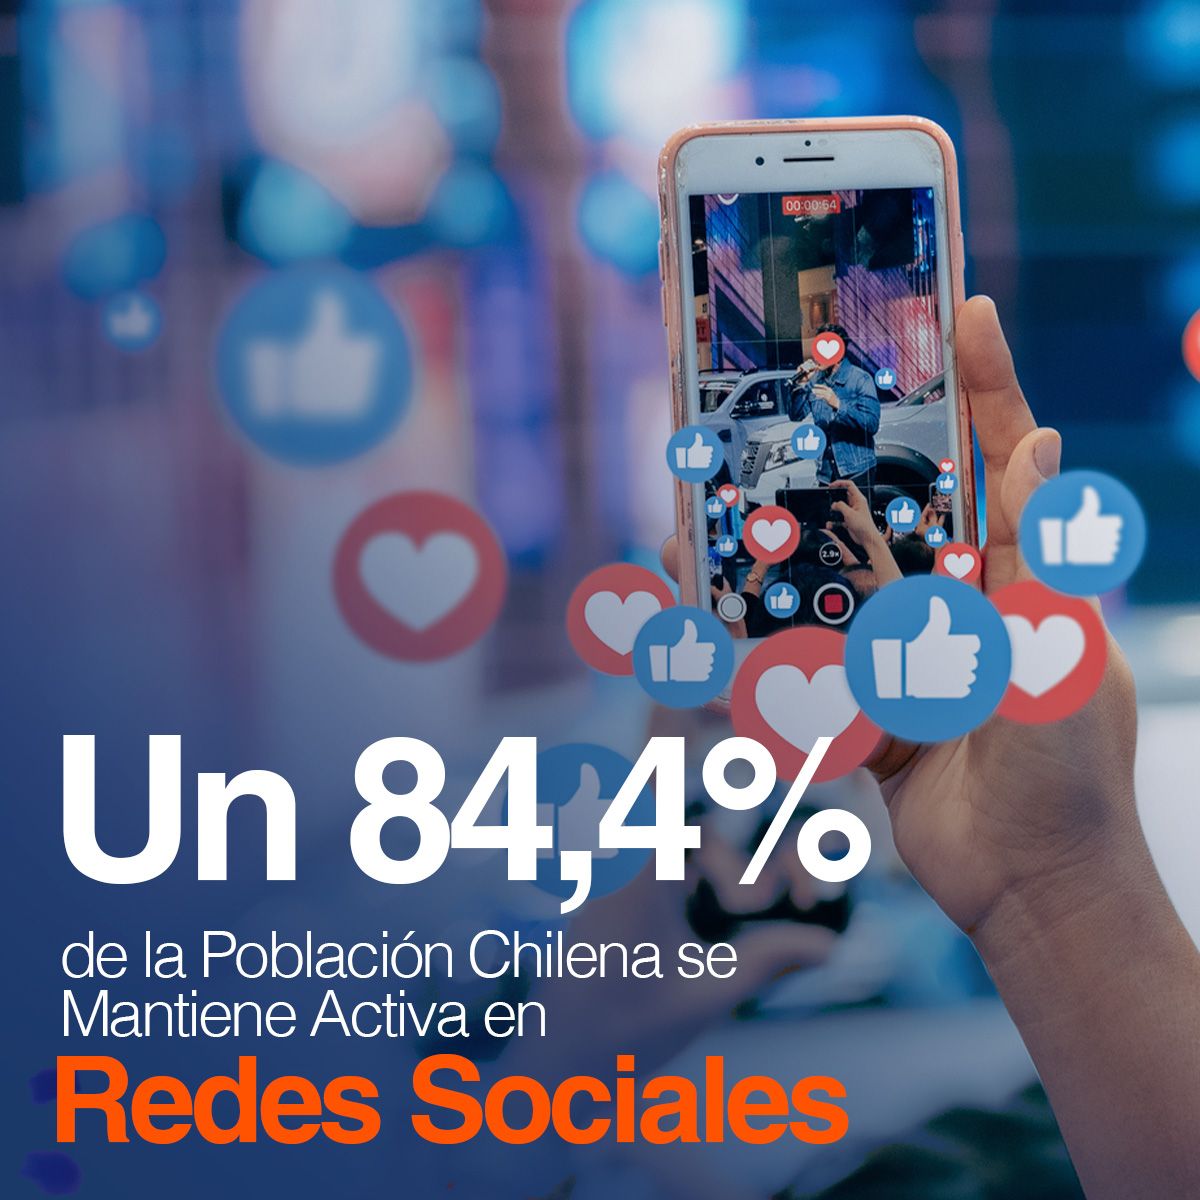 Un 84,4% de la Población Chilena se Mantiene Activa en Redes Sociales